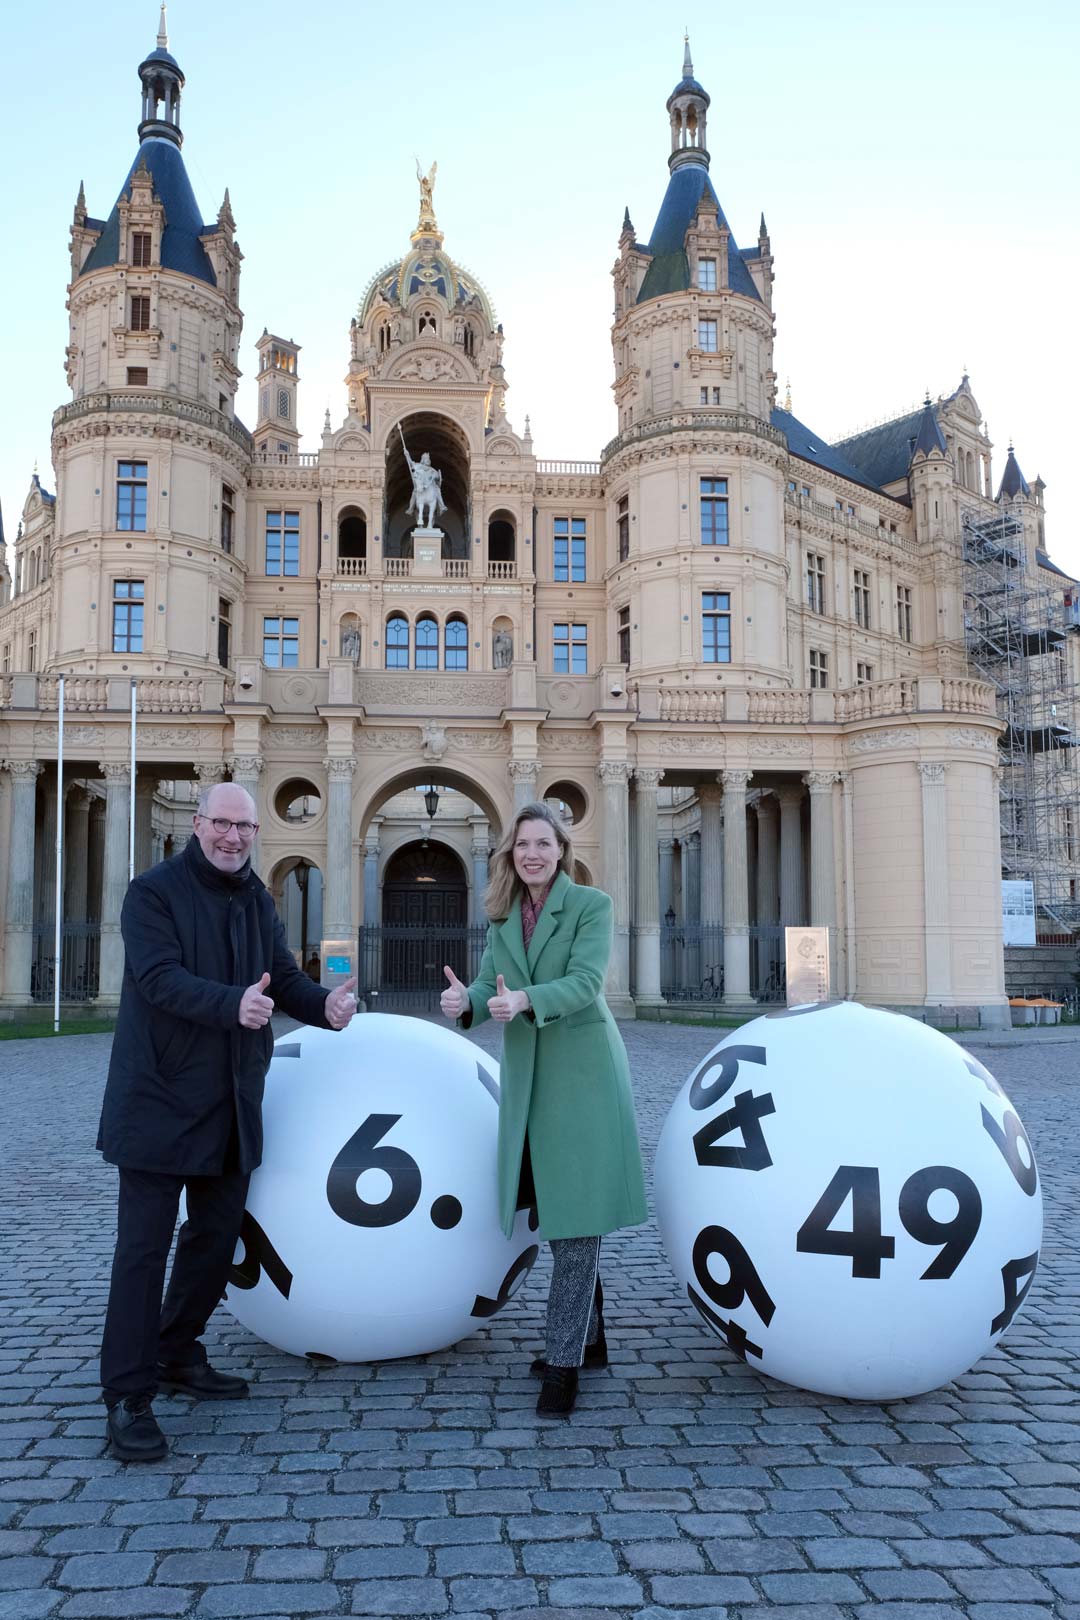 Zu sehen sind eine Frau und ein Mann vor dem Schweriner Schloss mit zwei großen Lottozahlen